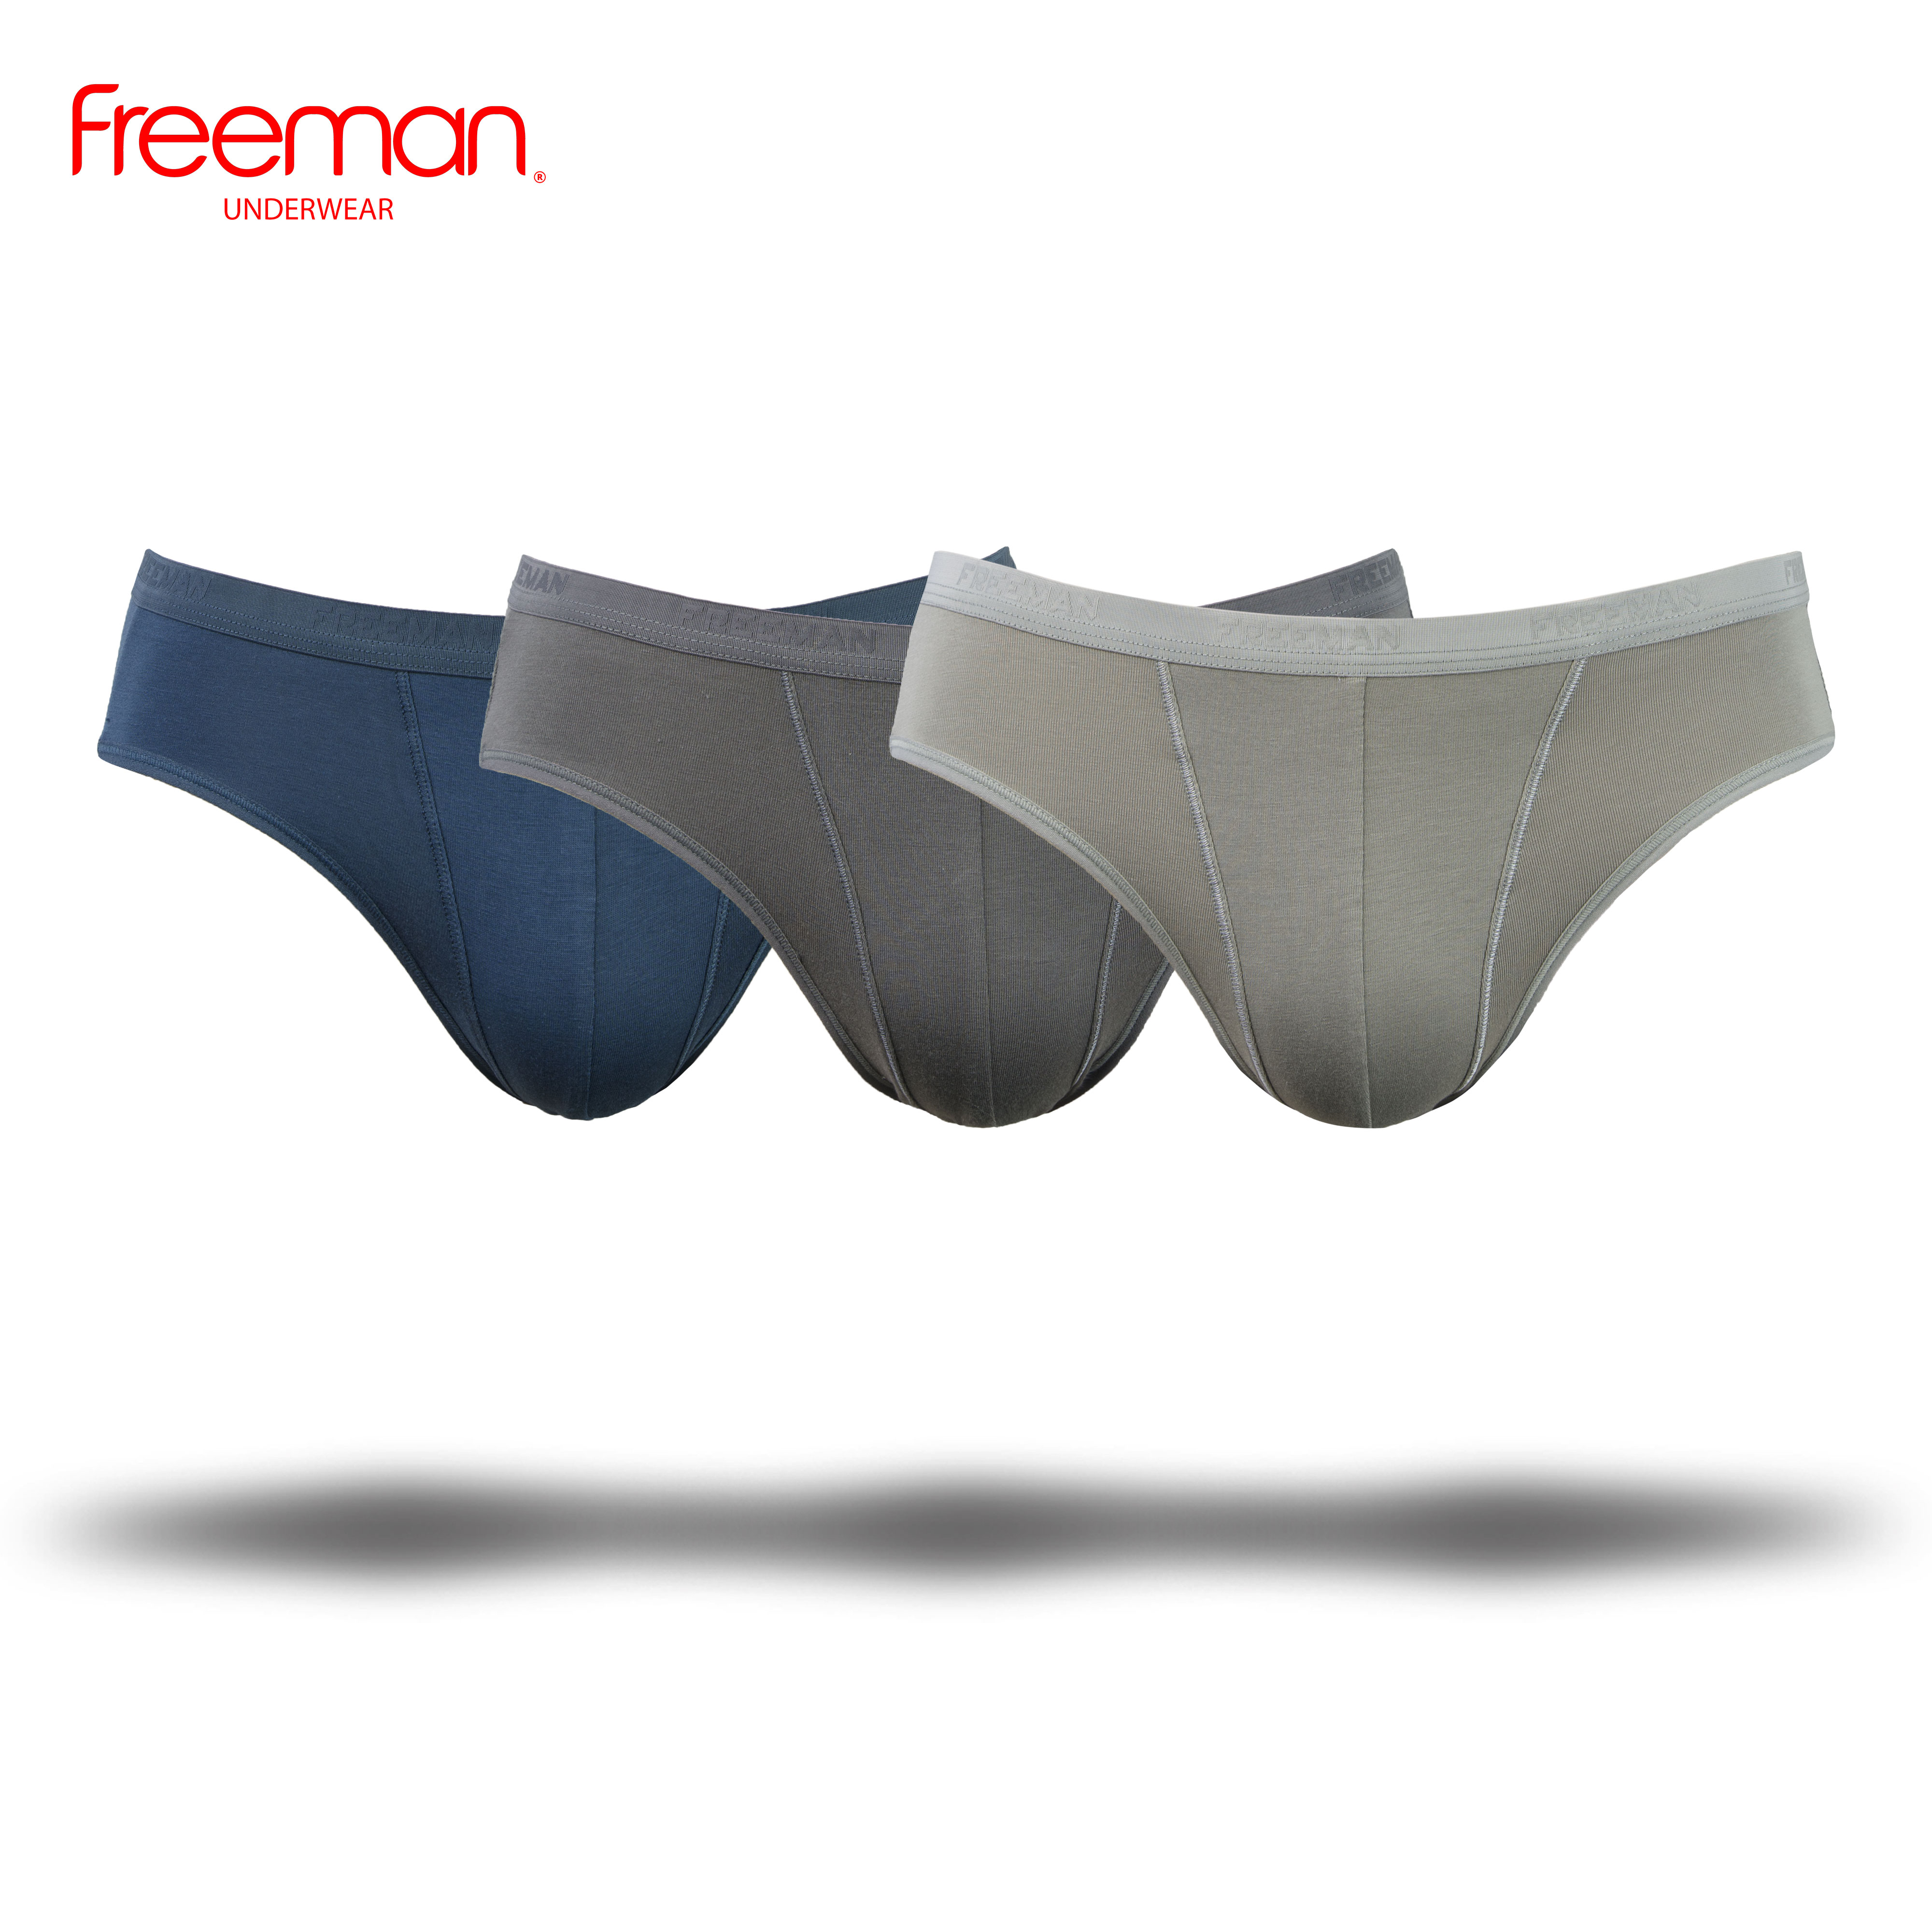 Combo 3 quần lót nam Freeman, chất liệu cotton thấm hút mồ hôi tốt, lưng bản nhỏ thoải mái 6045